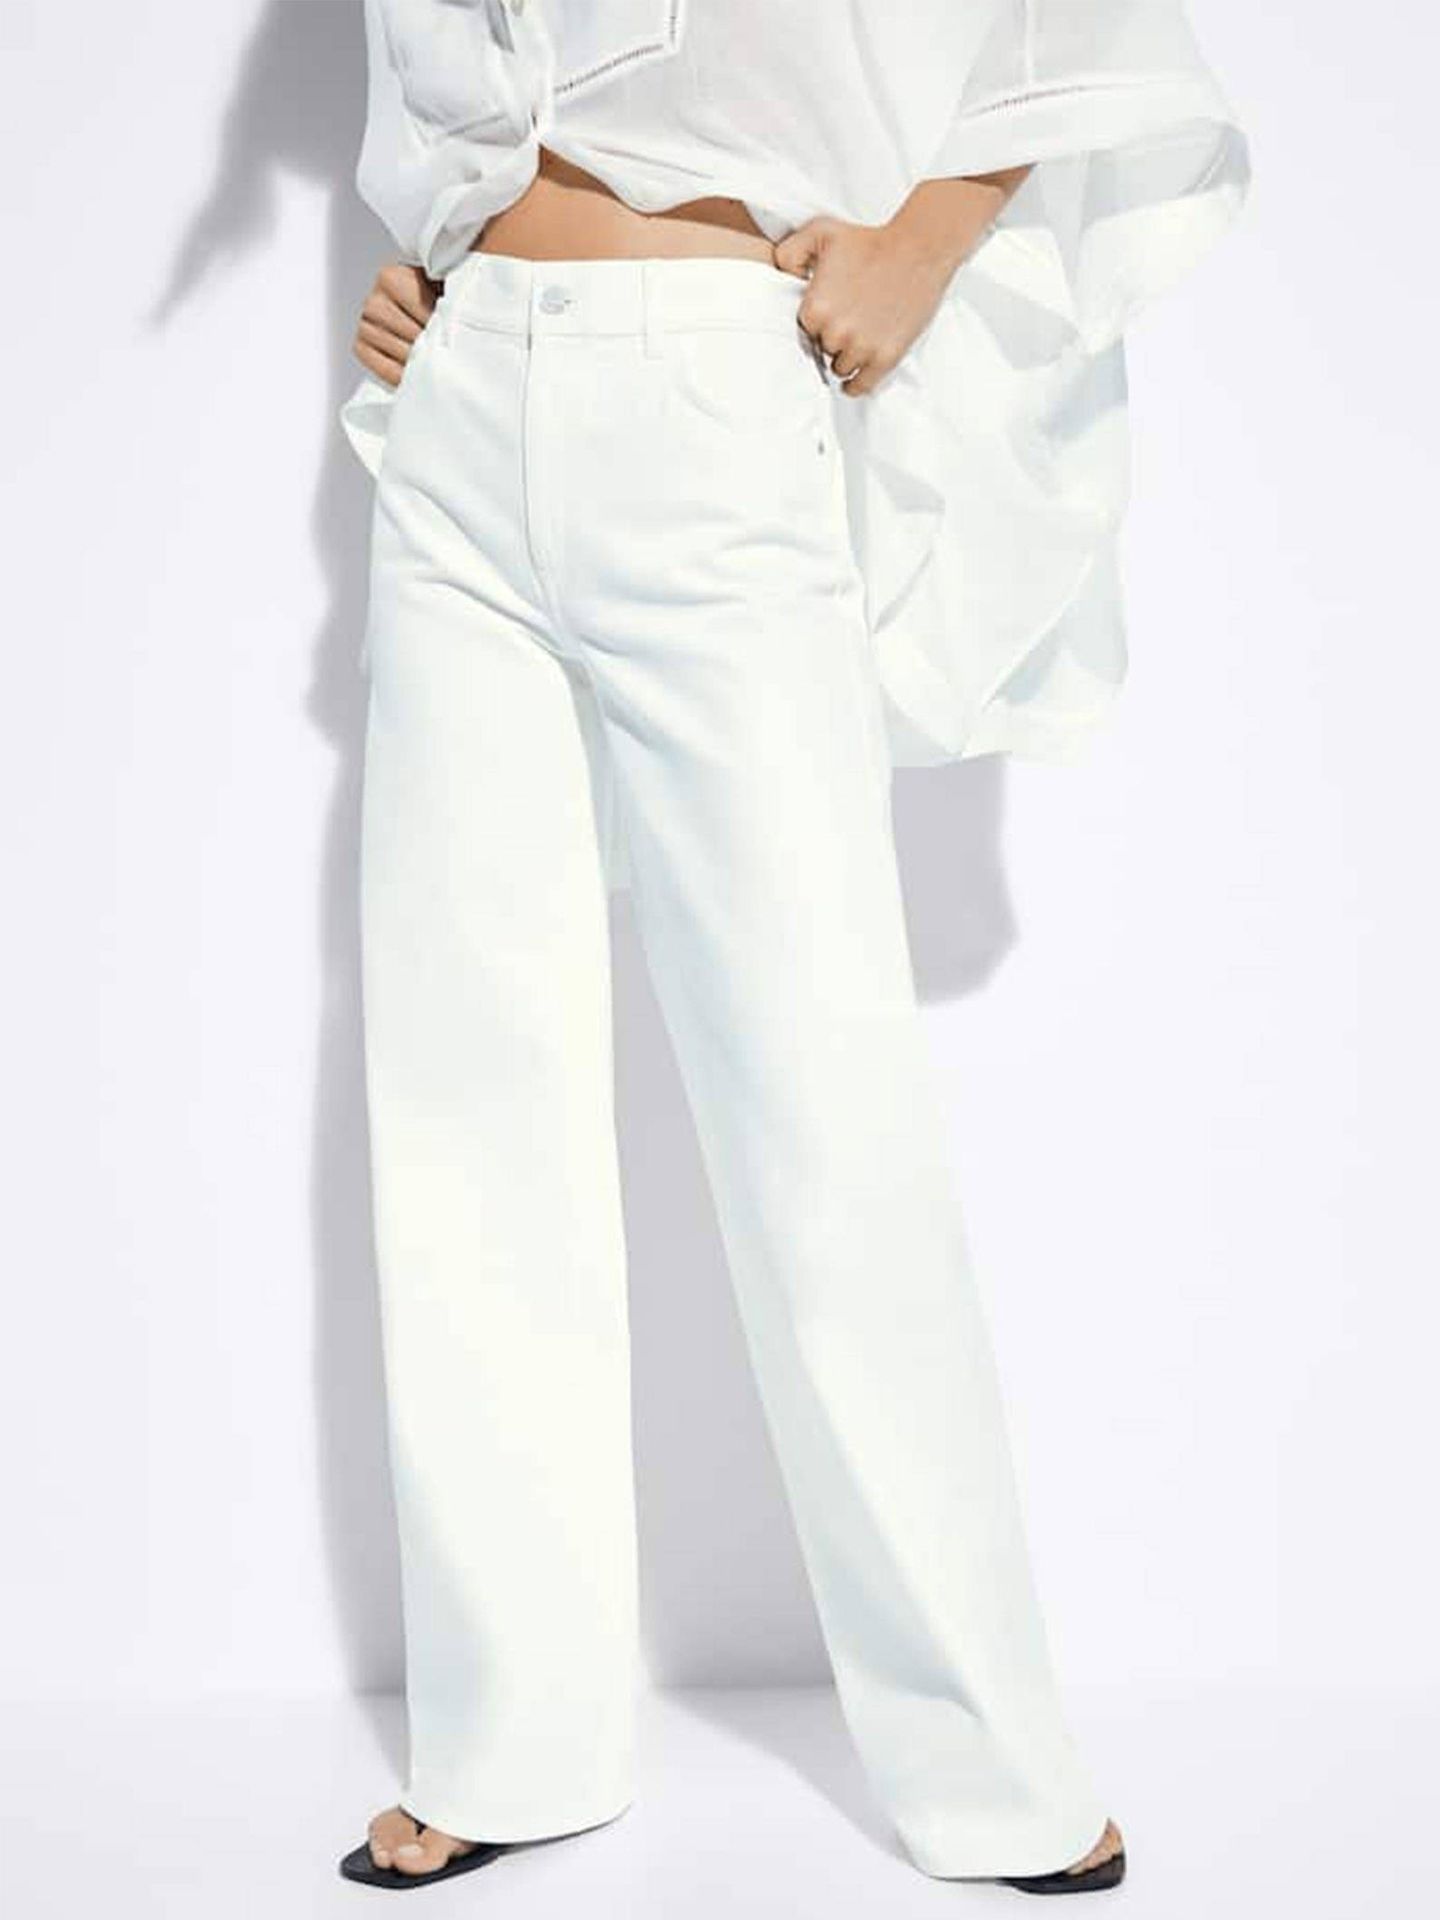 Pantalón blanco de Massimo Dutti. (Cortesía)